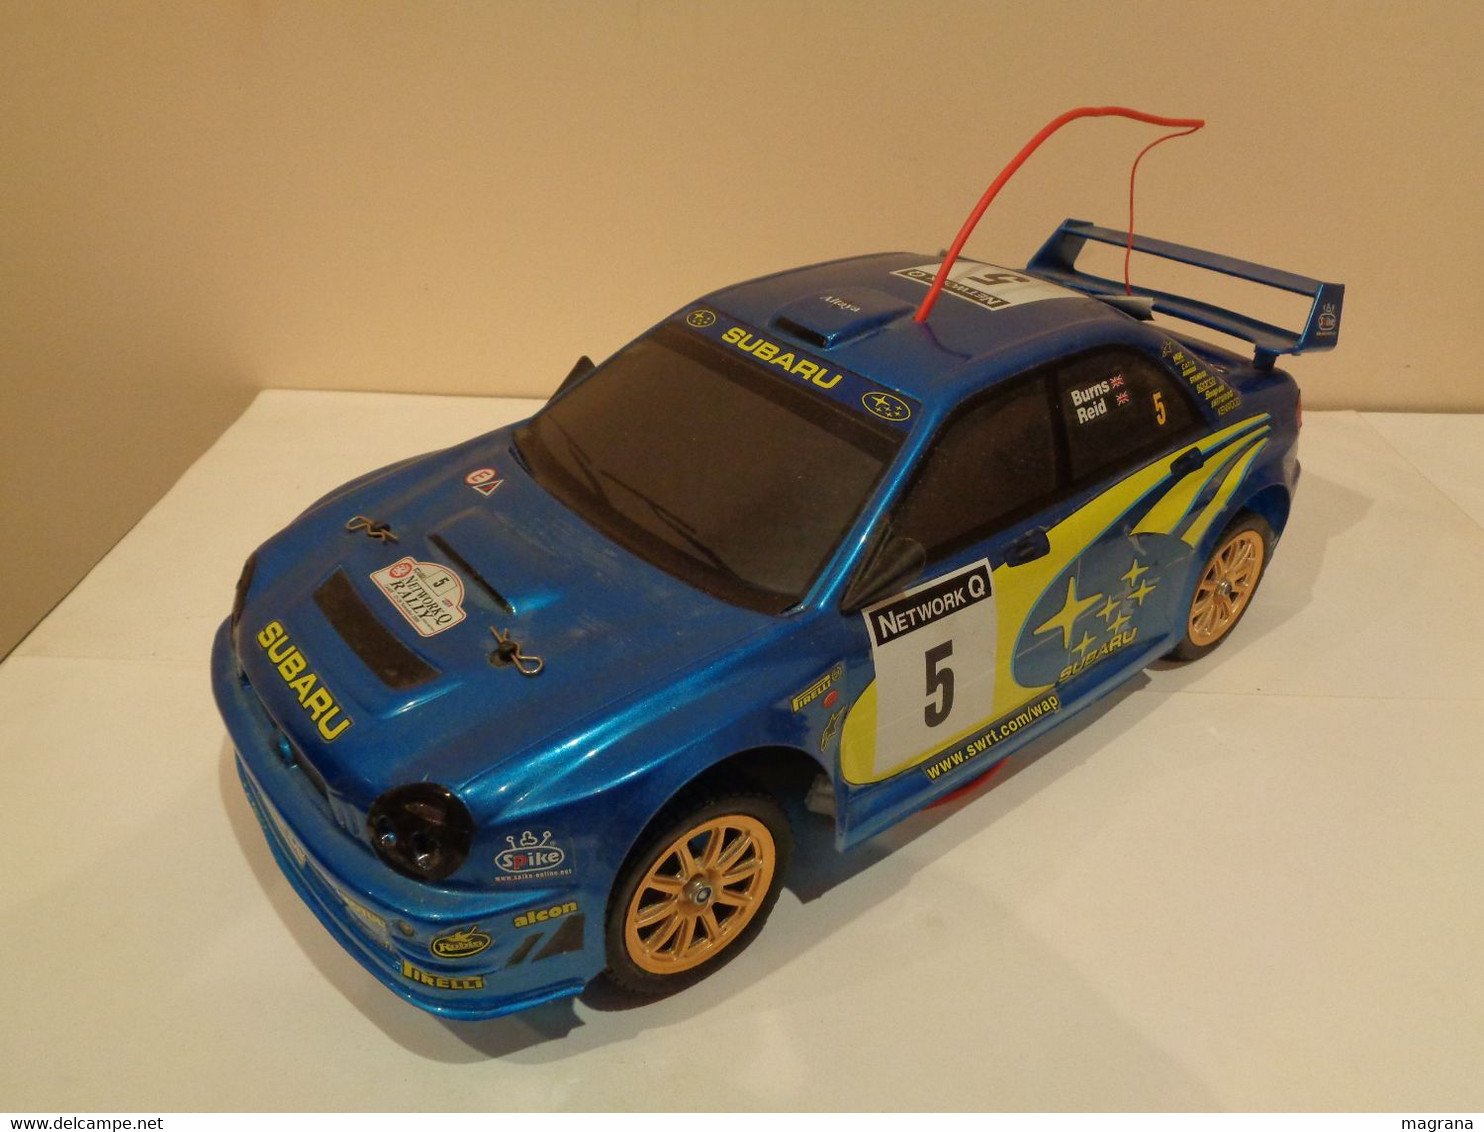 Radiocontrol Altaya. Coche Subaru Impreza WRC. Escala 1/10. Año 2002. Coleccionable Completo.